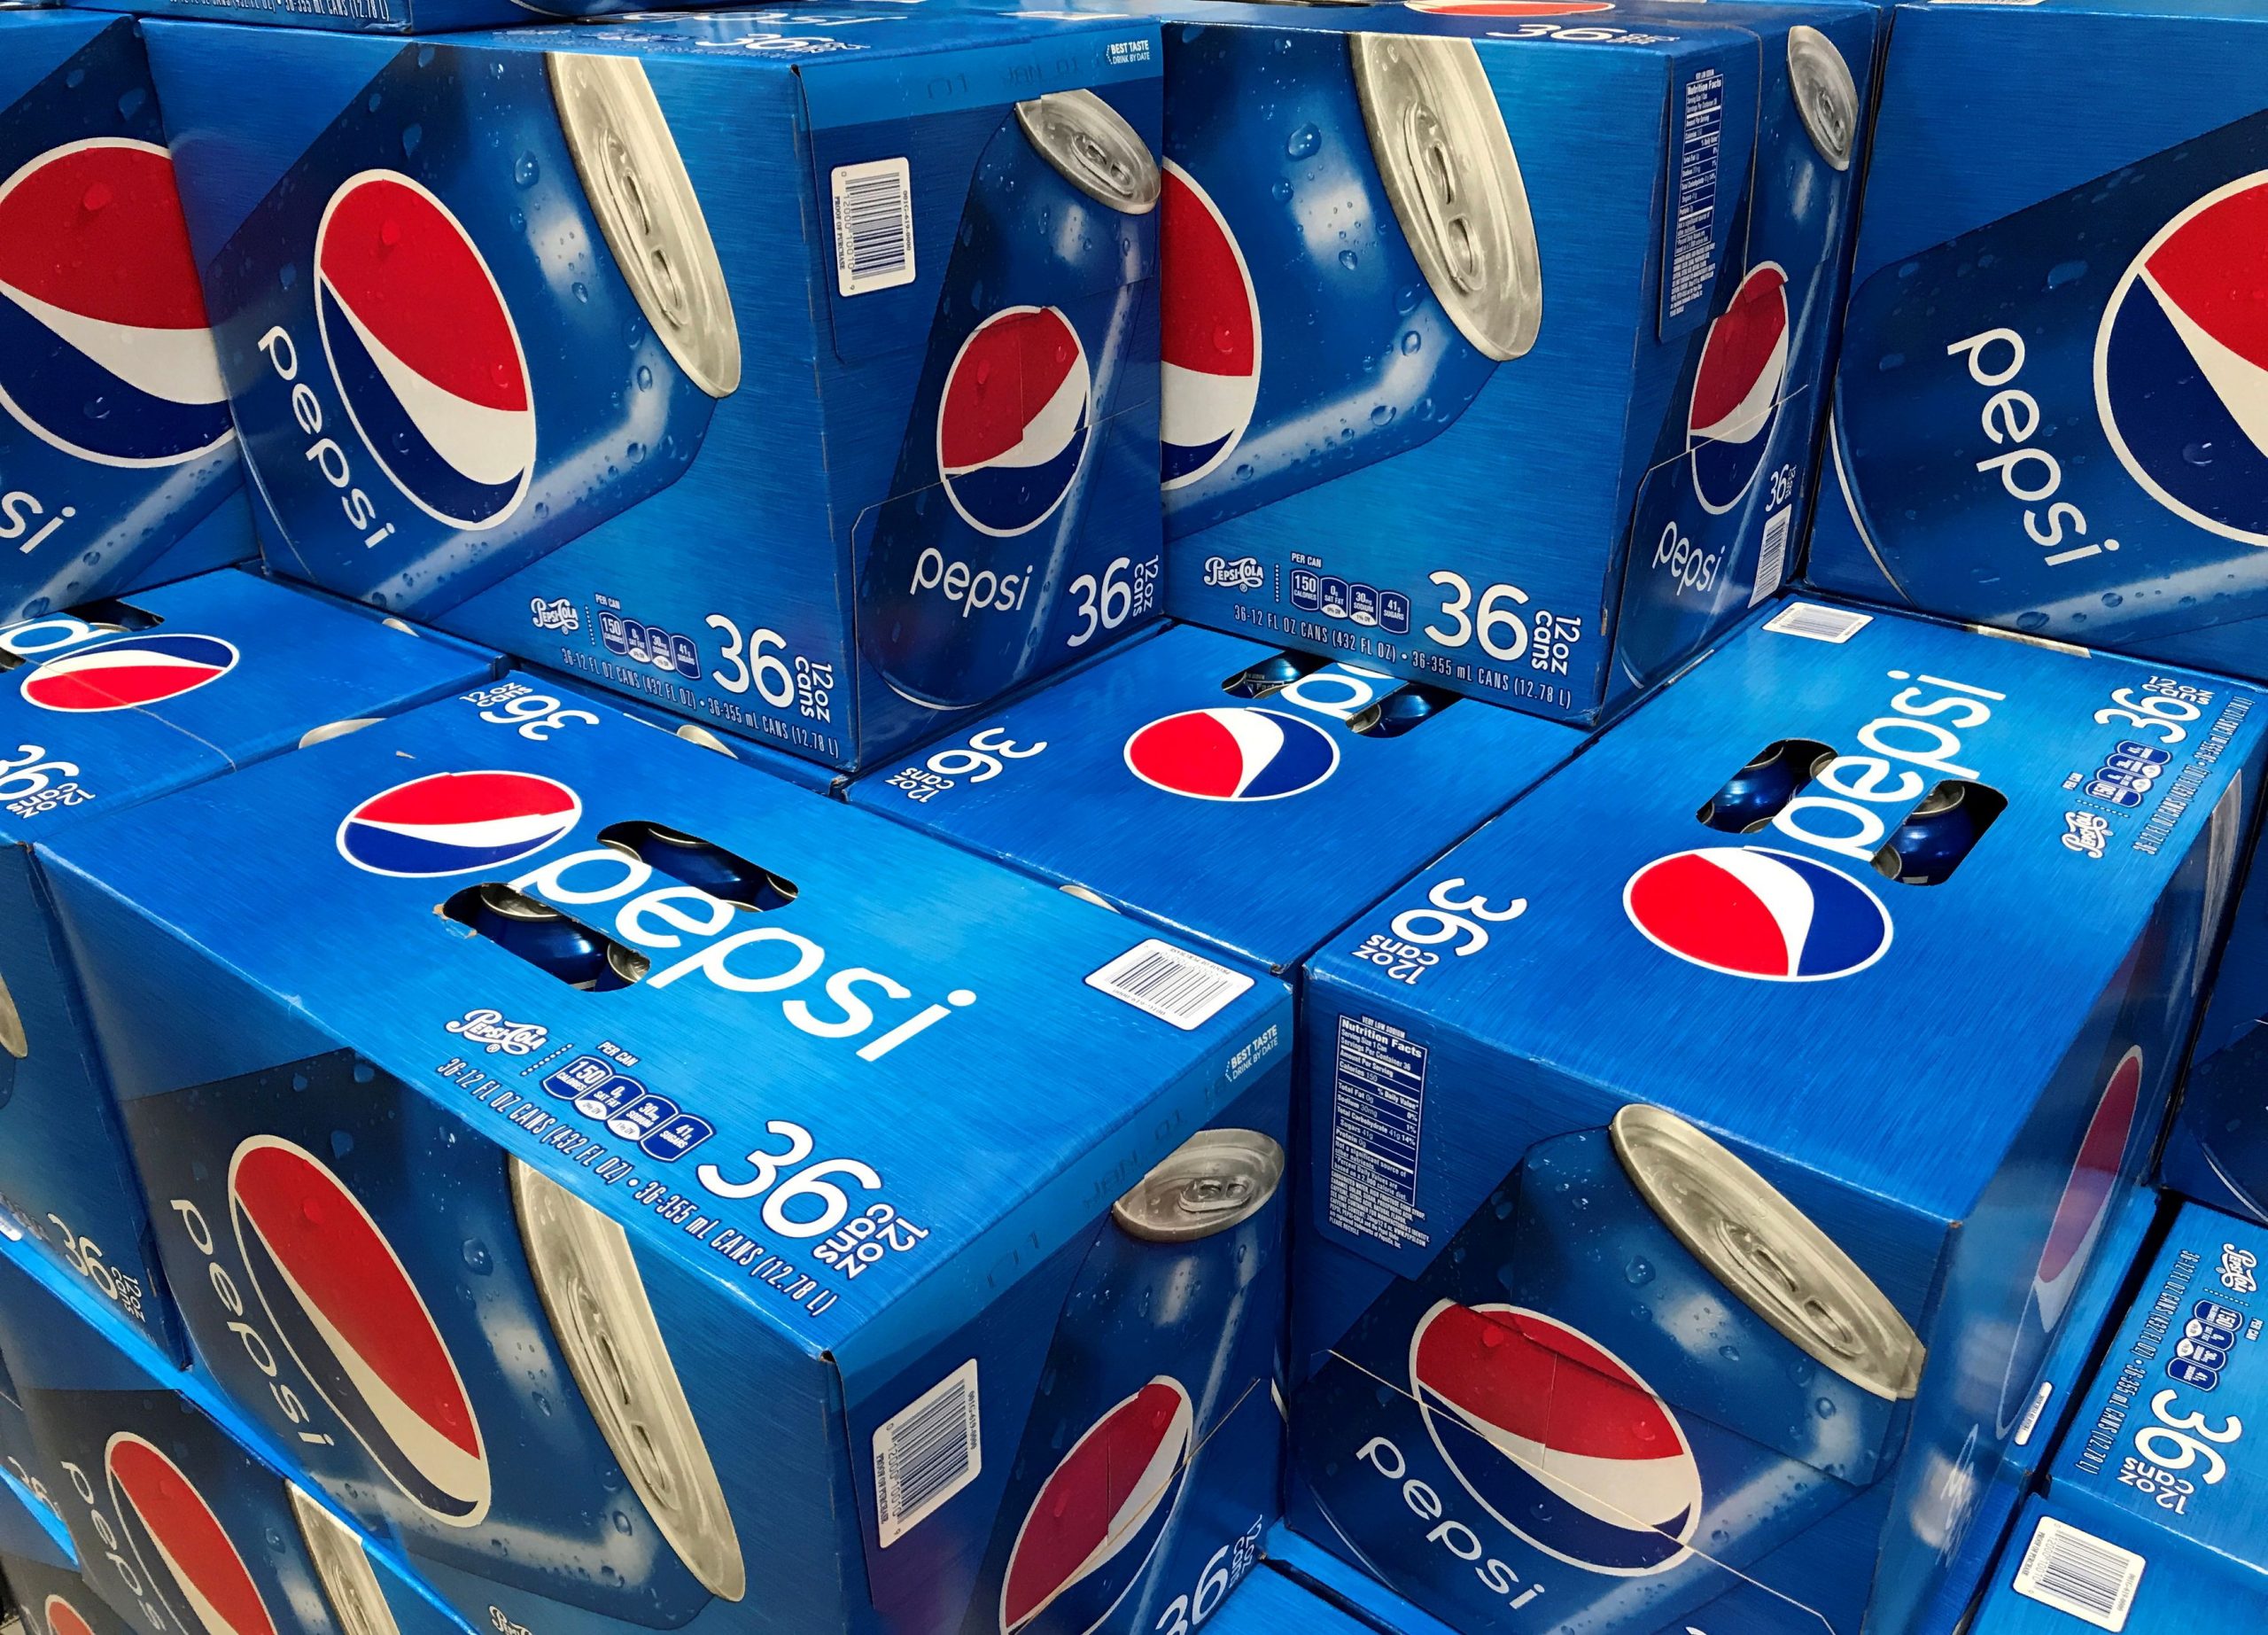 Pepsi: Τι ισχυρίστηκε όταν κάποιος την κατηγόρησε ότι βρήκε ποντίκι σε αναψυκτικό;